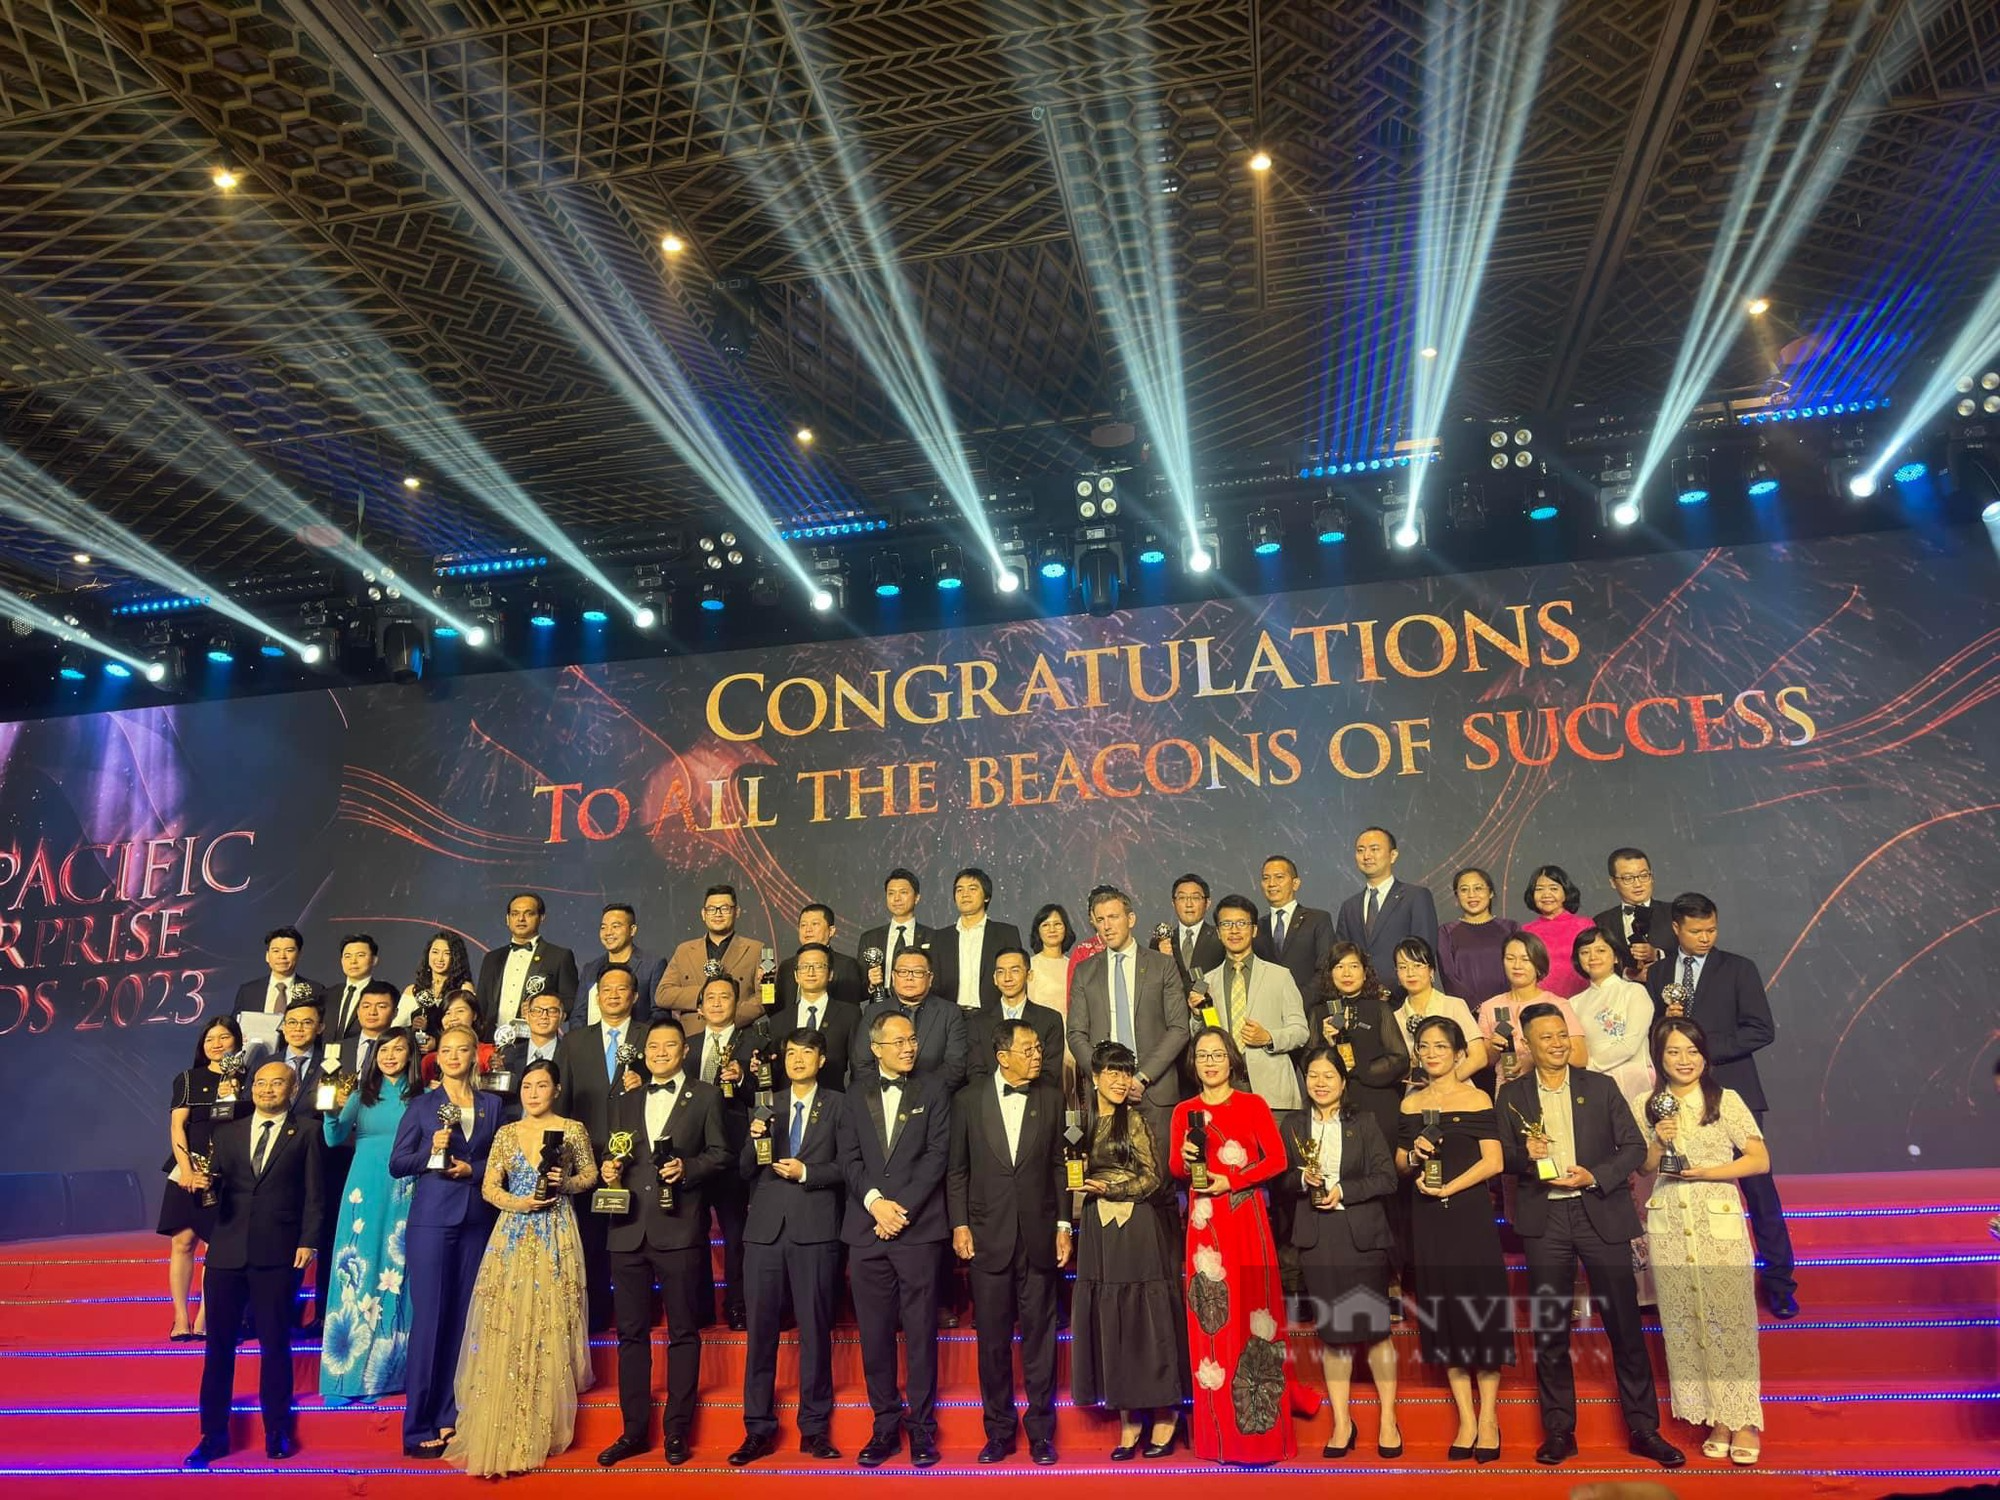 65 doanh nghiệp và doanh nhân nhận Giải thưởng Doanh nghiệp châu Á 2023 - Ảnh 2.